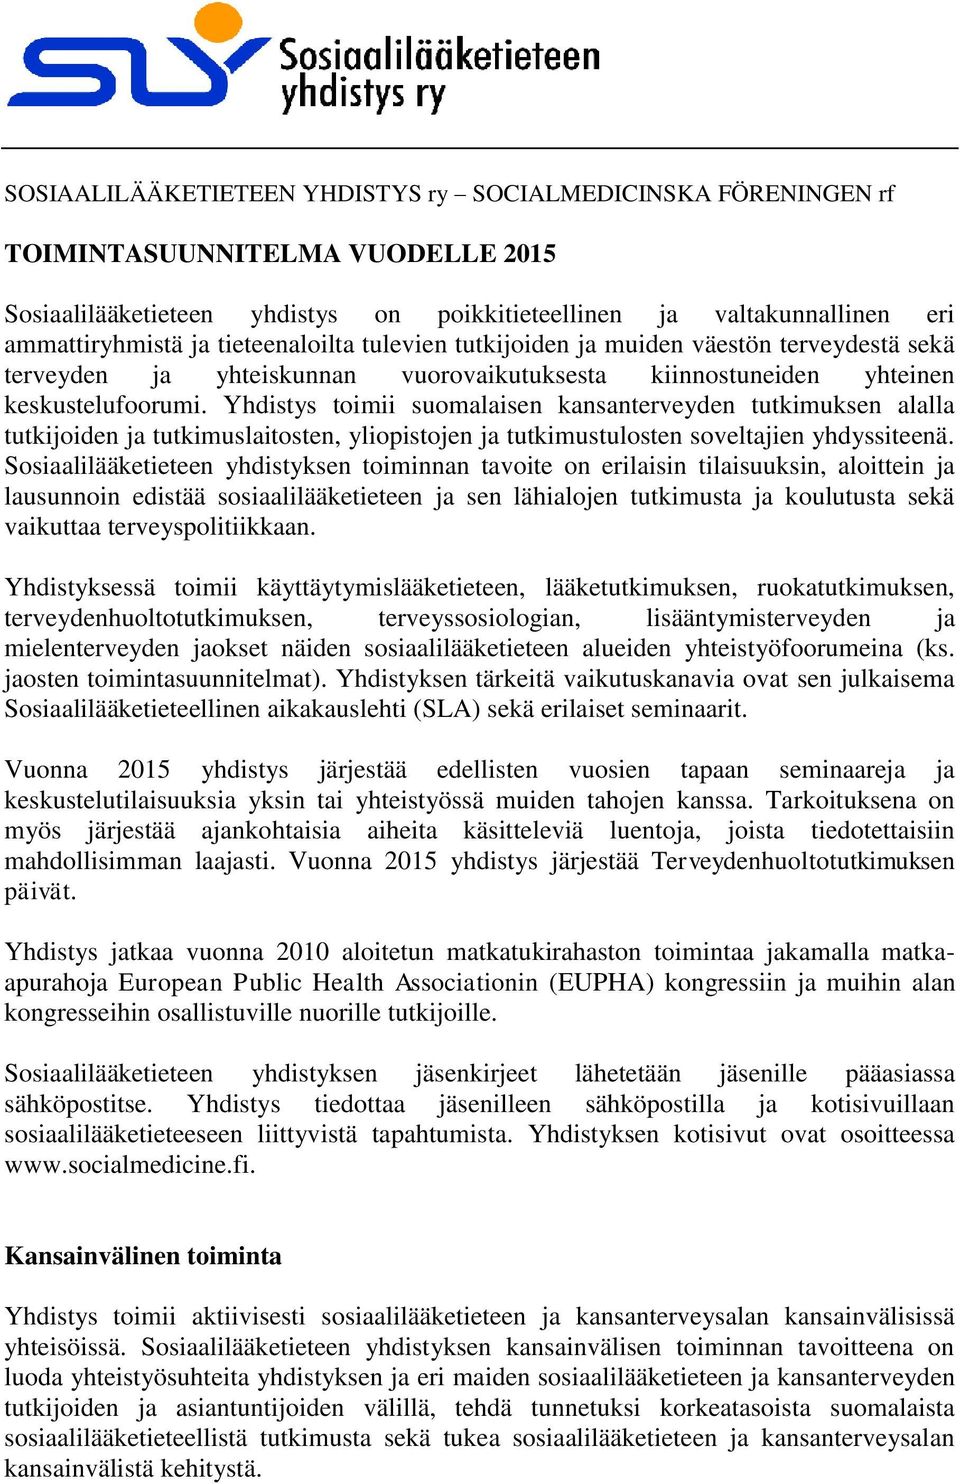 Yhdistys toimii suomalaisen kansanterveyden tutkimuksen alalla tutkijoiden ja tutkimuslaitosten, yliopistojen ja tutkimustulosten soveltajien yhdyssiteenä.